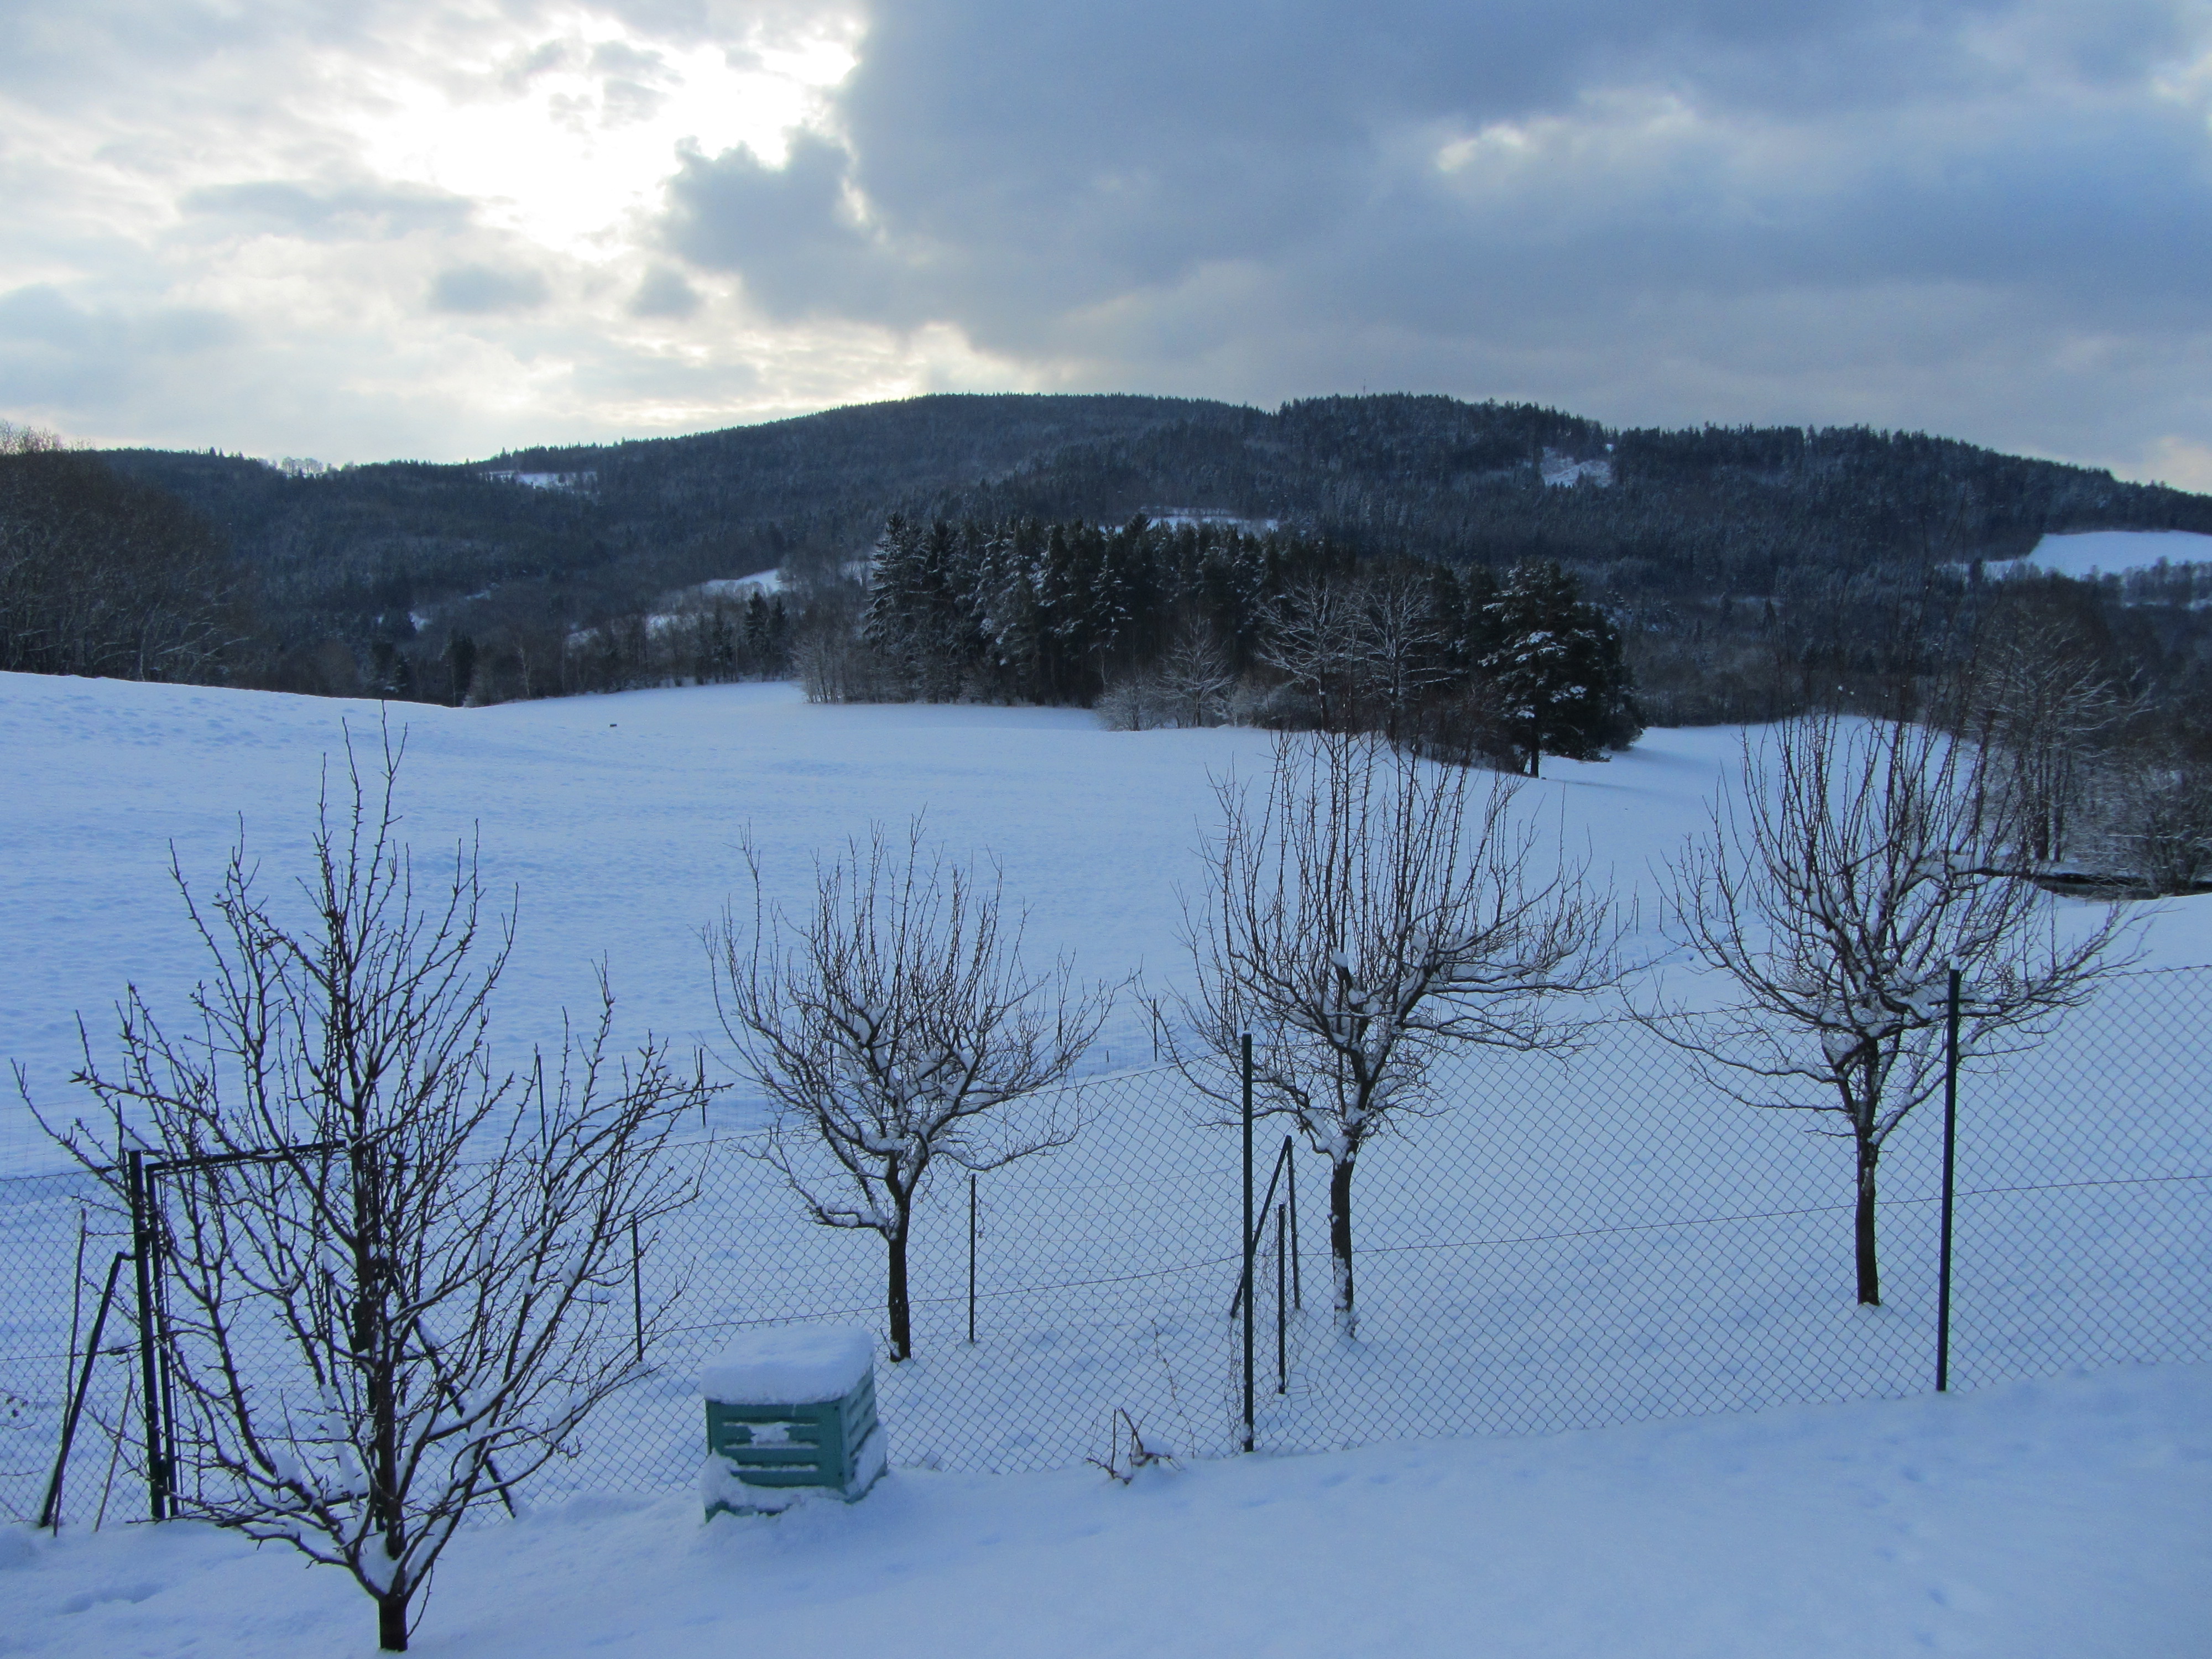 Uitzicht op heuvels van Sumava in de winter. Vakantiehuis of woning te koop Tsjechie.